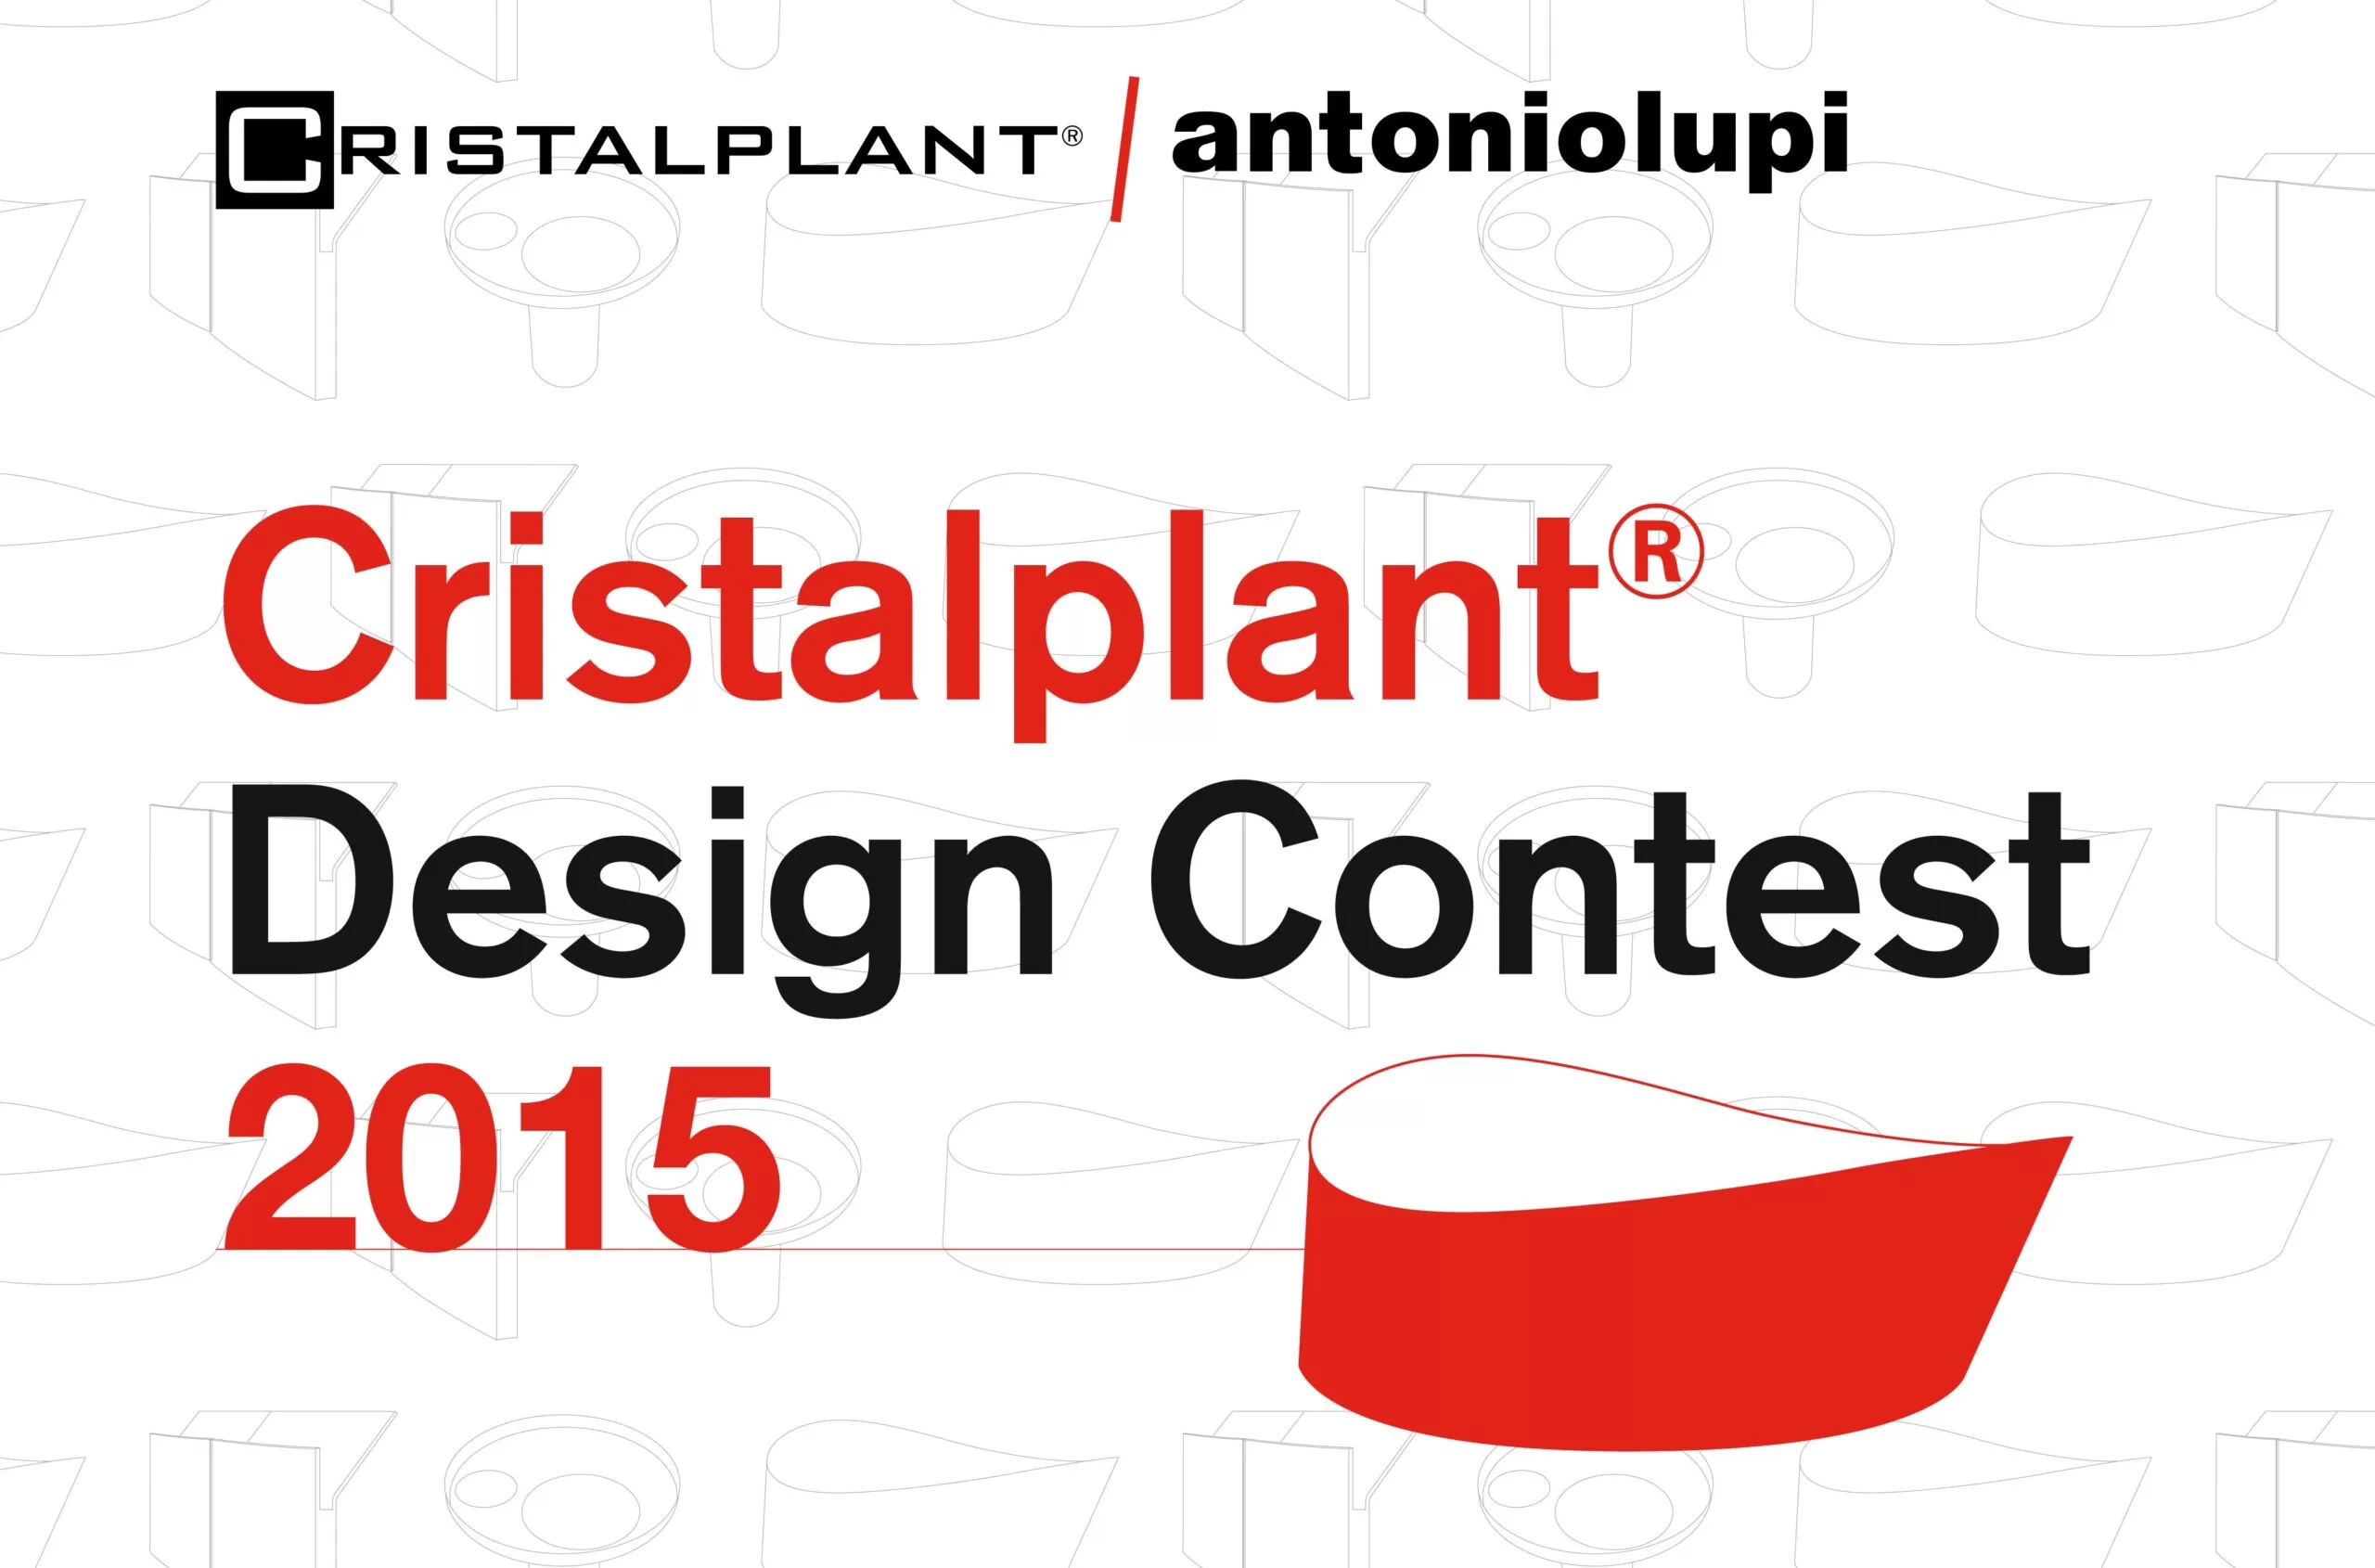 antoniolupi - Cristalplant Design Contest 2014_immagine_20141013110359_lr